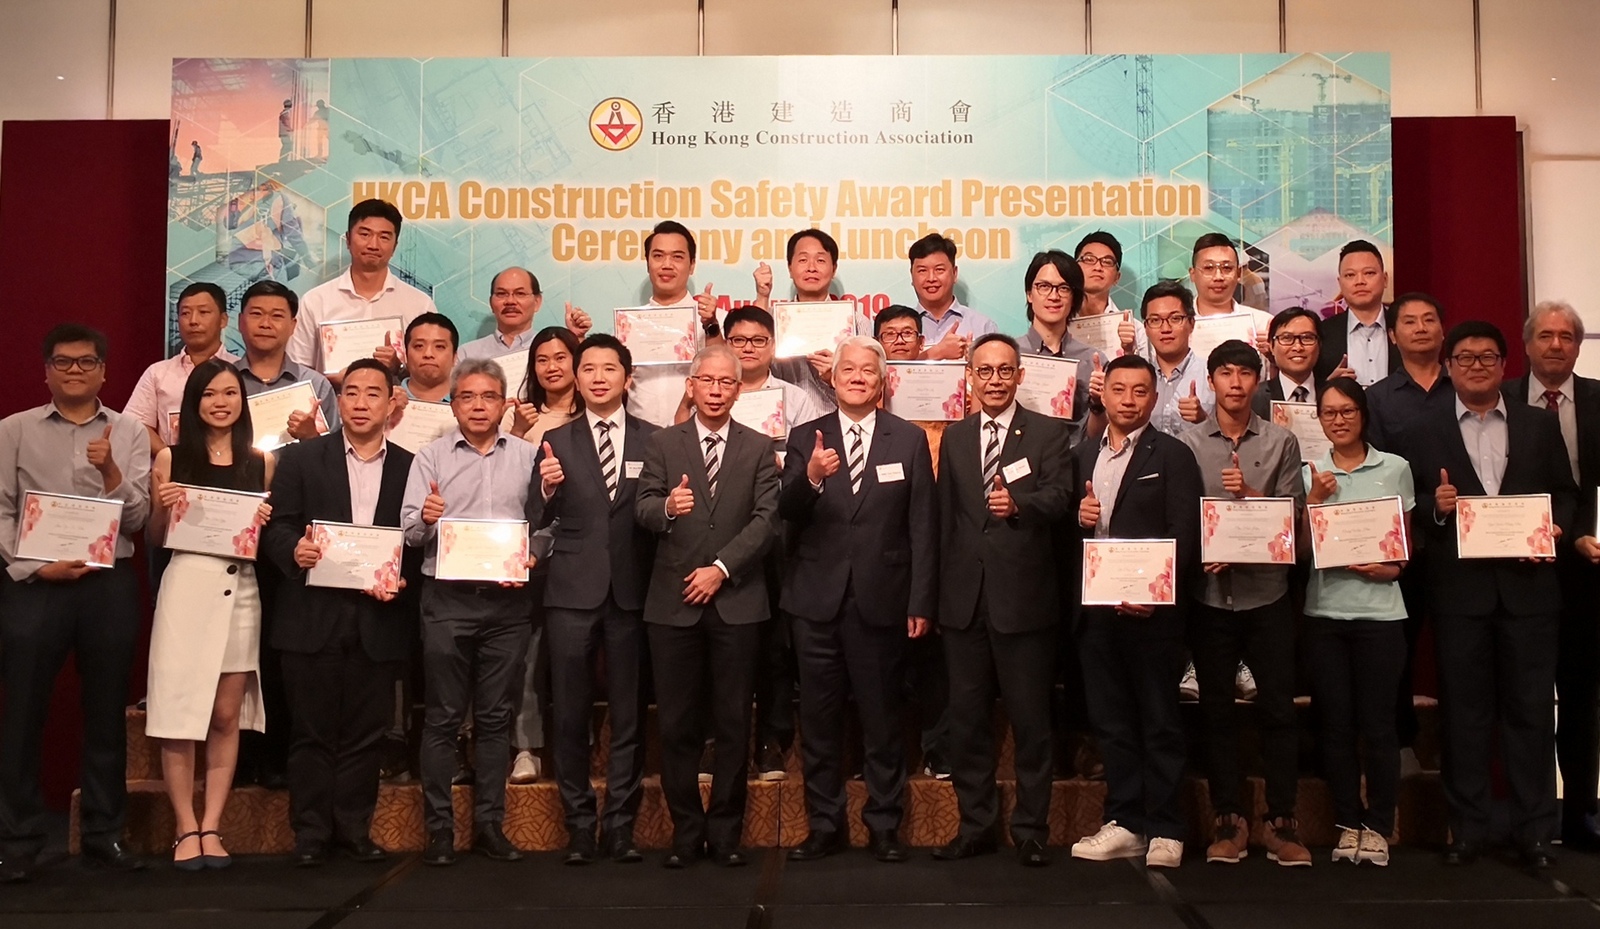 「香港建造商会建造安全大奬」颁奖典礼